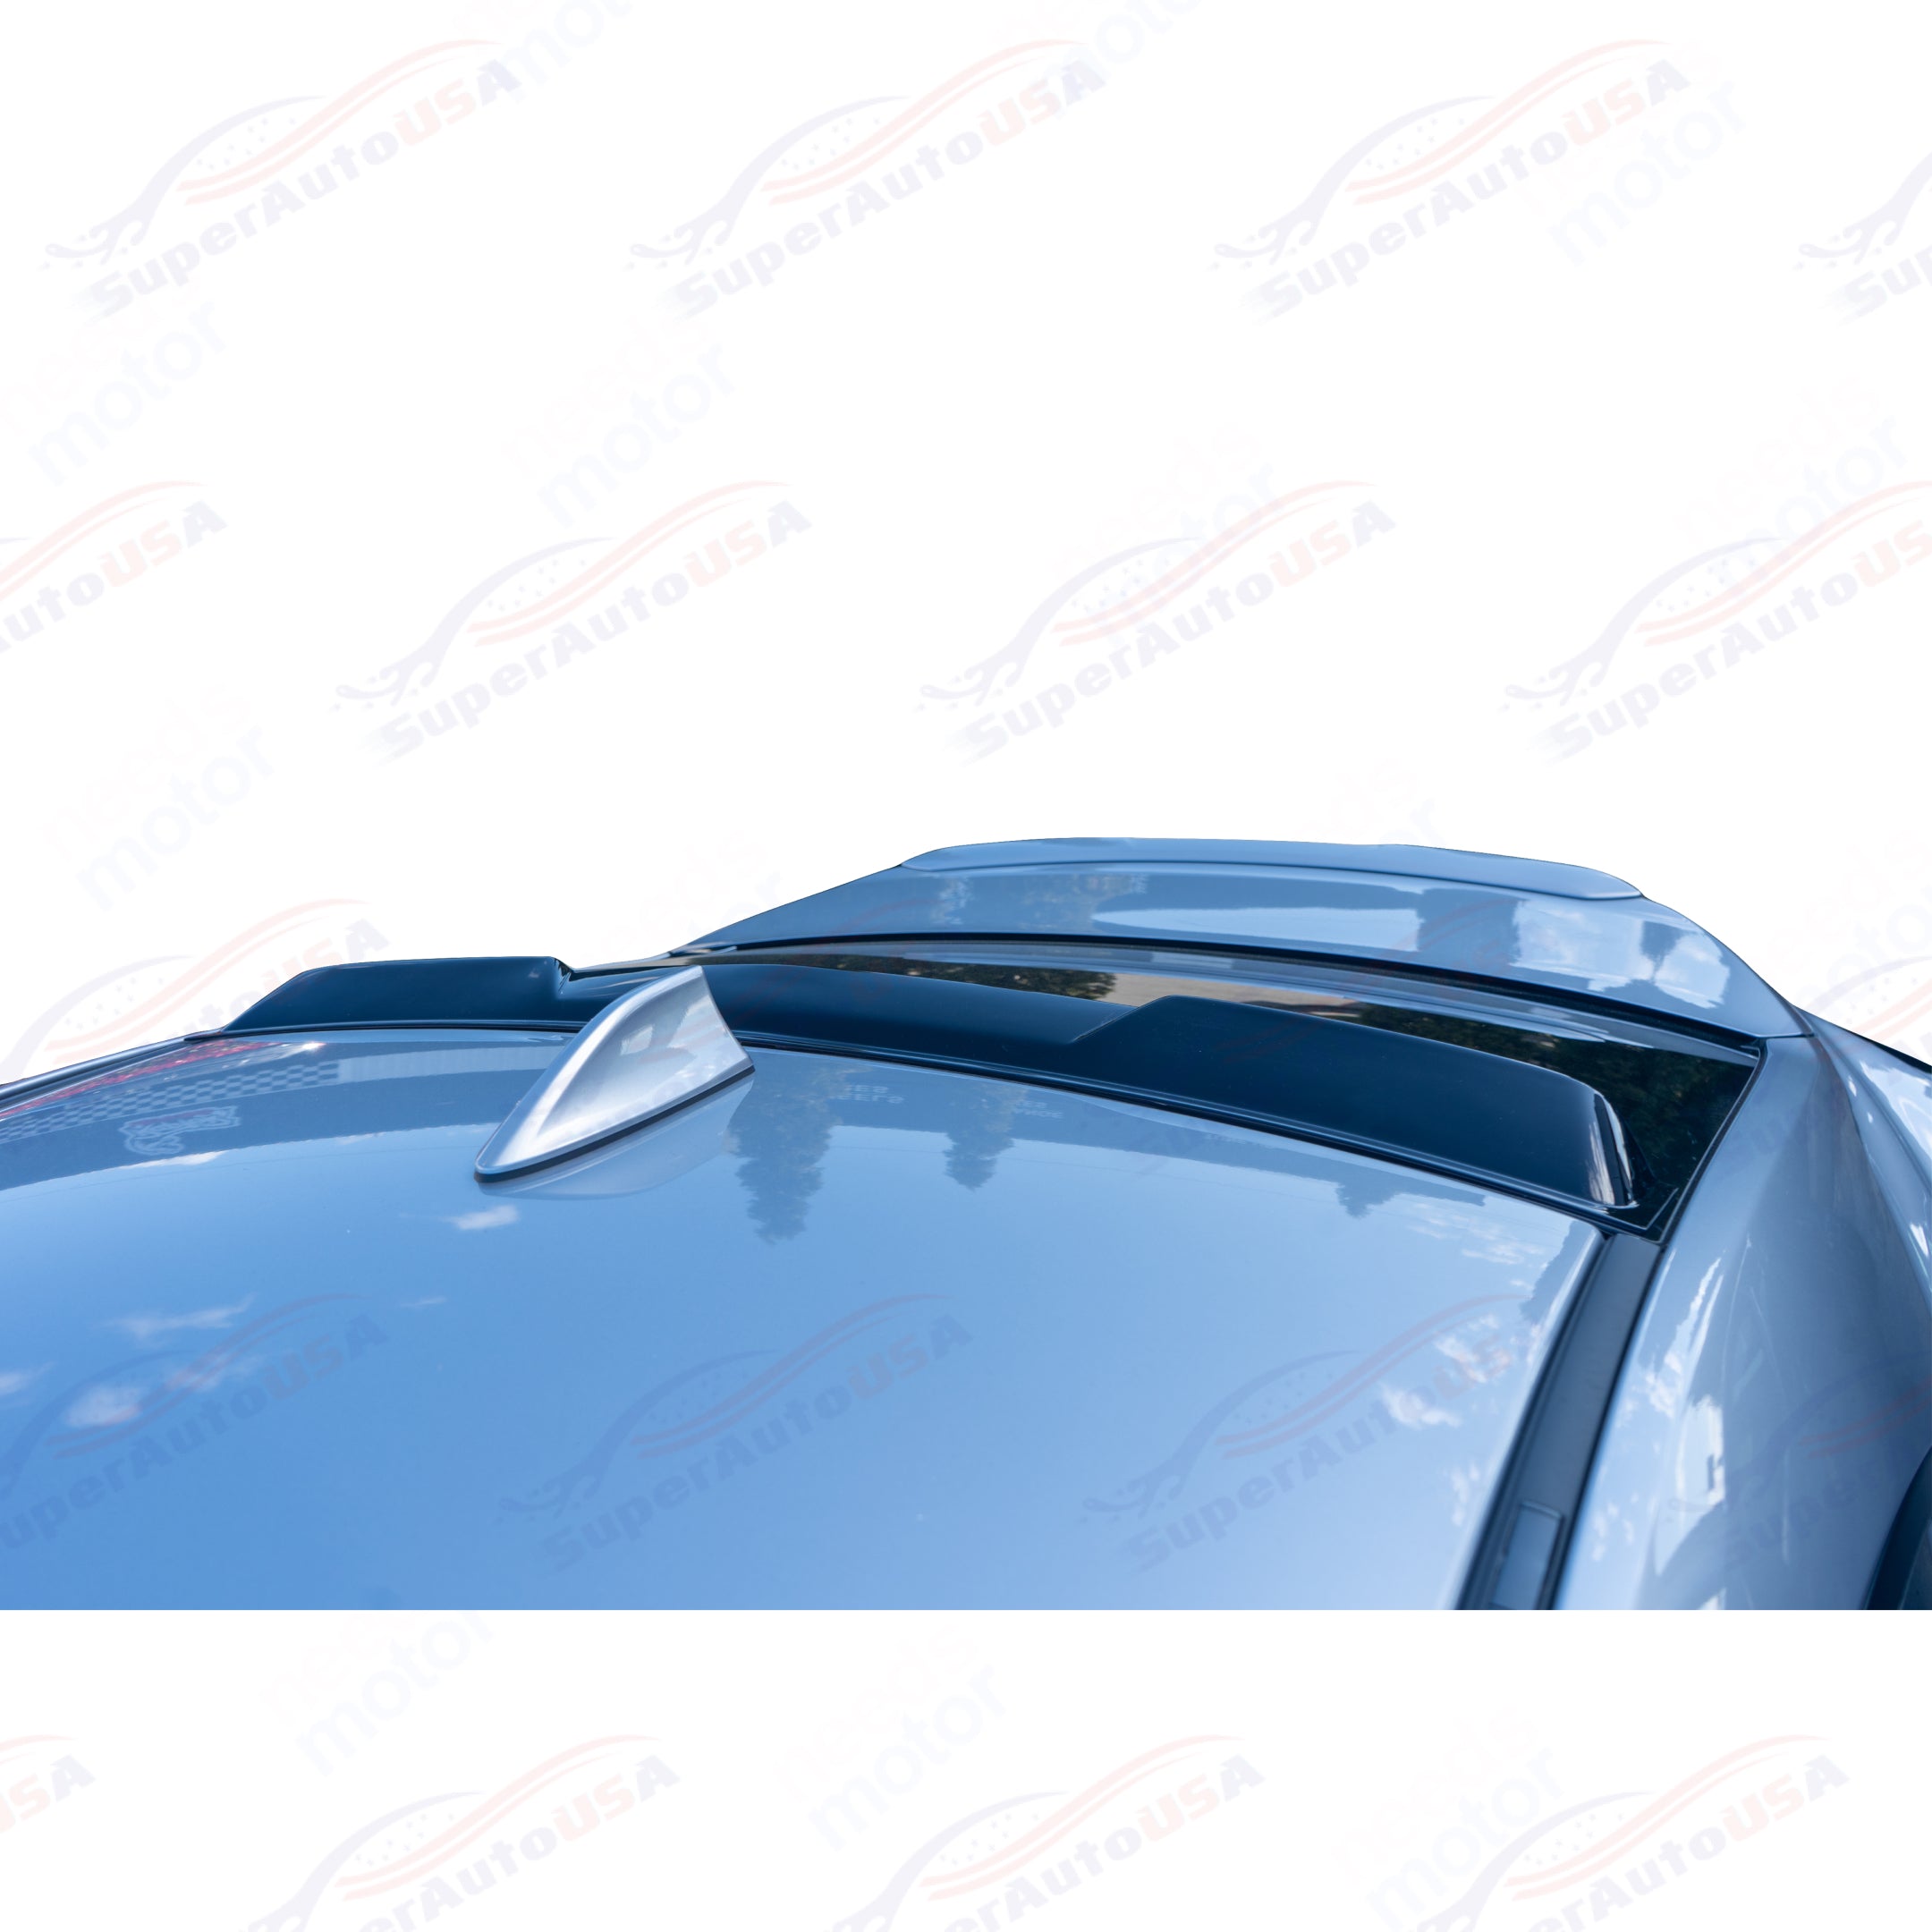 For Chevrolet Camaro 2010-15 ABS Gloss Black Rear Roof Window Visor Spoiler Wing